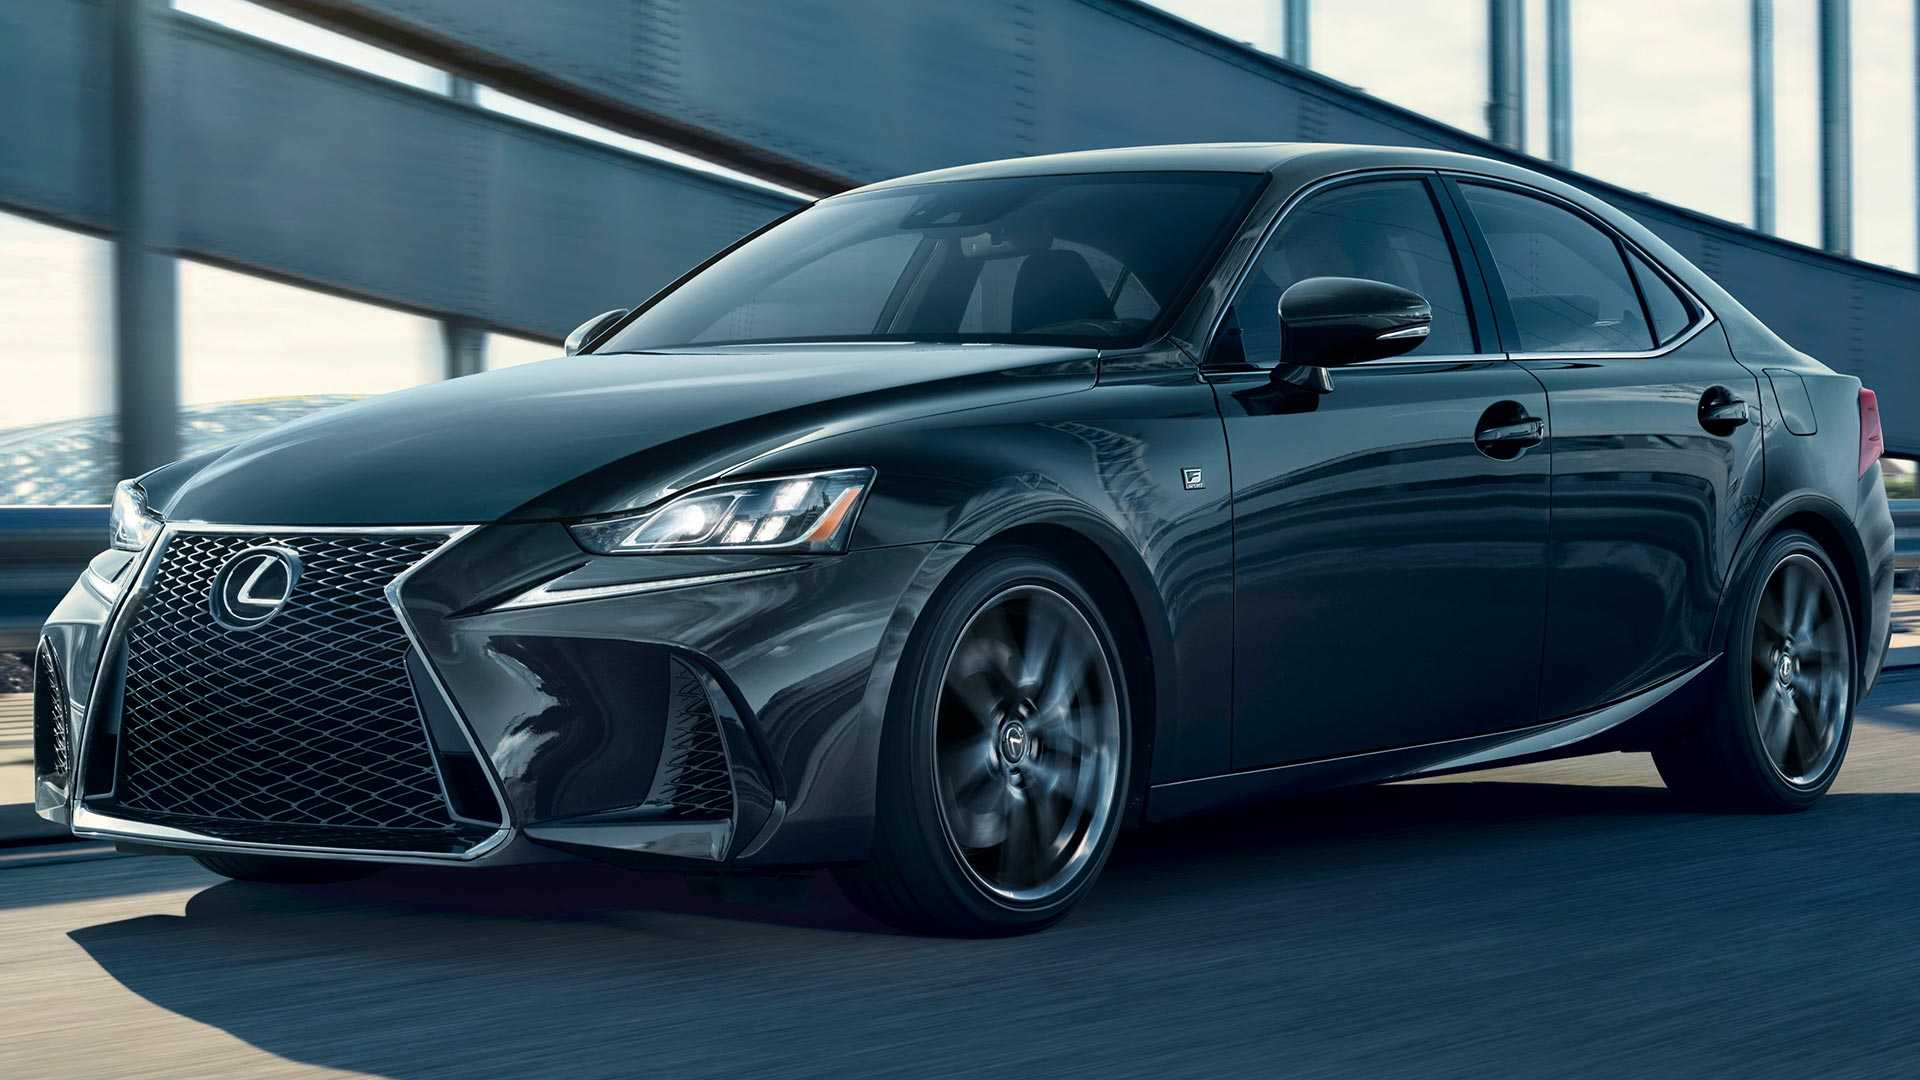 New 2022 Lexus Is 300 Interior, Price, 060 Lexus Specs News